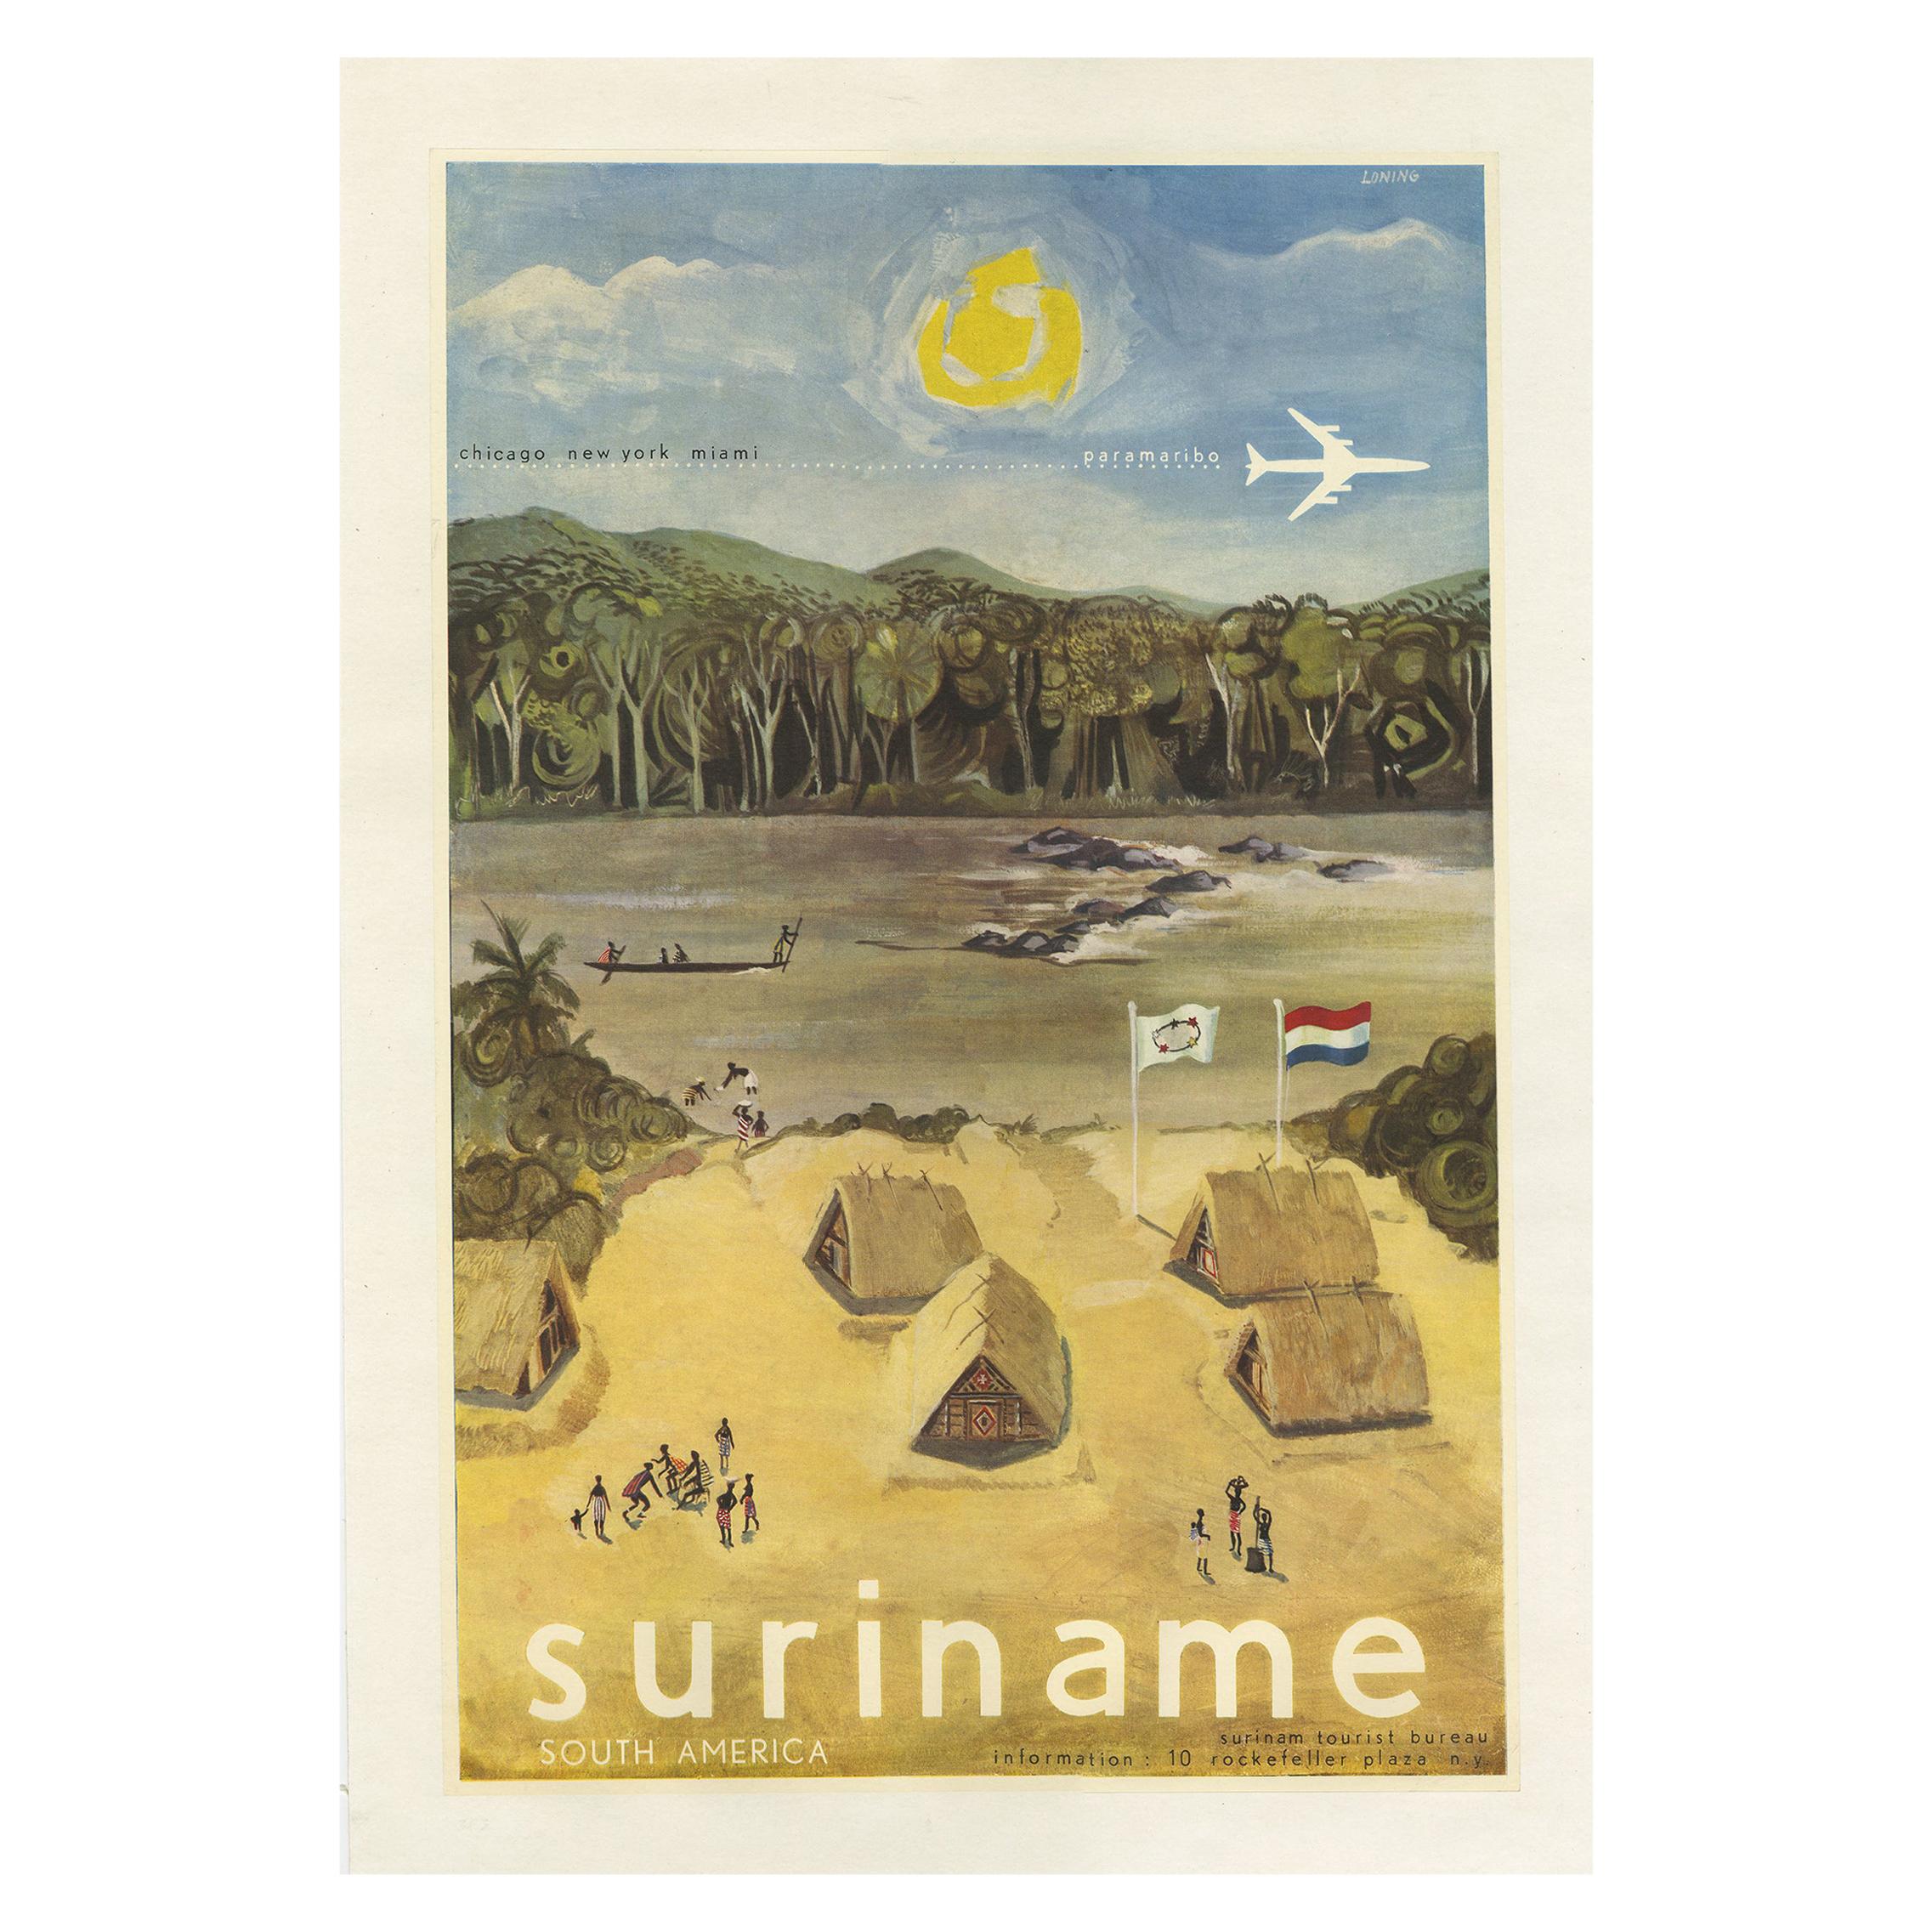 The Vintage Poster, herausgegeben vom Fremdenverkehrsamt von Suriname, um 1950